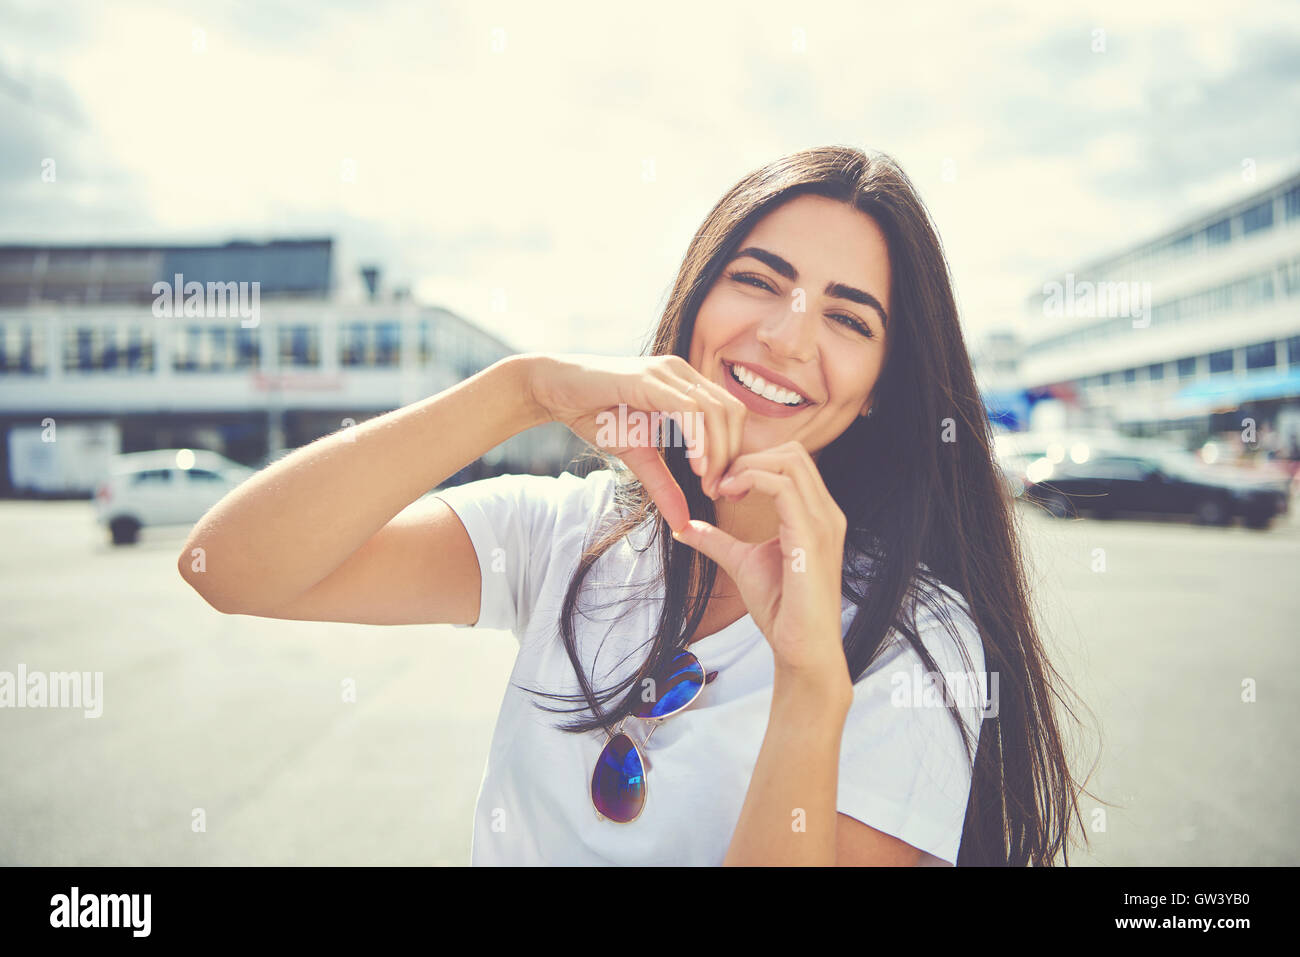 Lachen, attraktive junge Frau, die im Freien in einem städtischen Umfeld, ein Herz, das symbolische Geste mit den Händen der Liebe Stockfoto